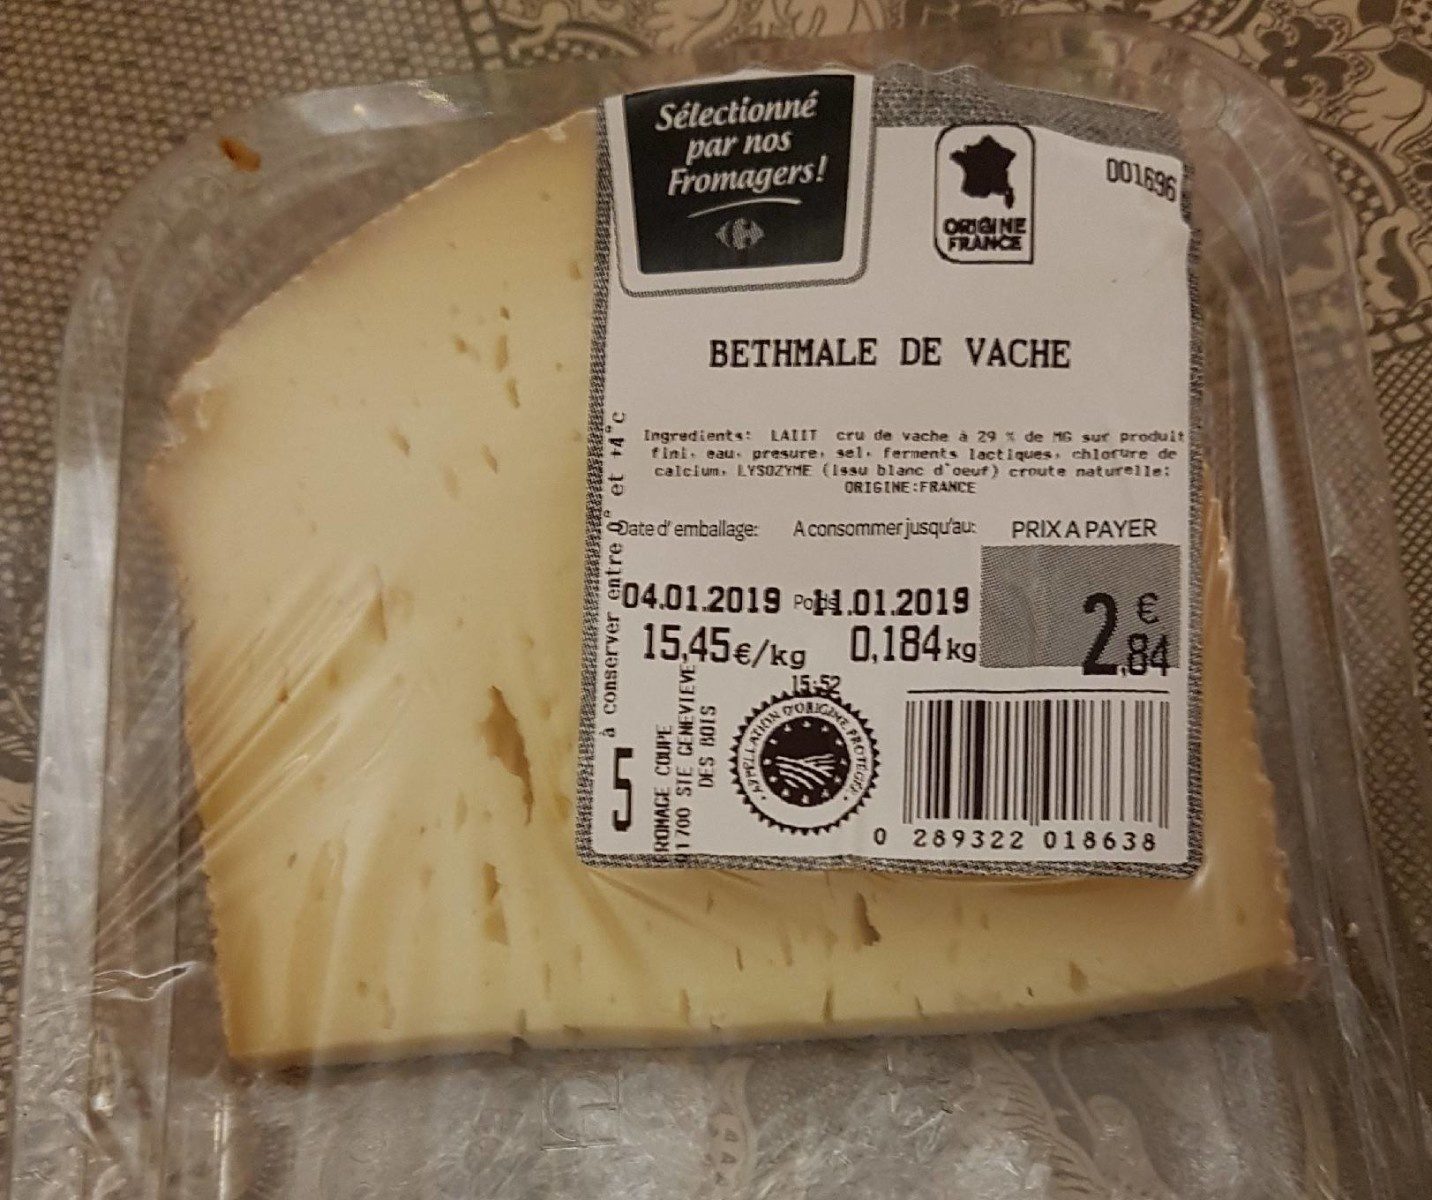 Bethmale de vache - Product - fr